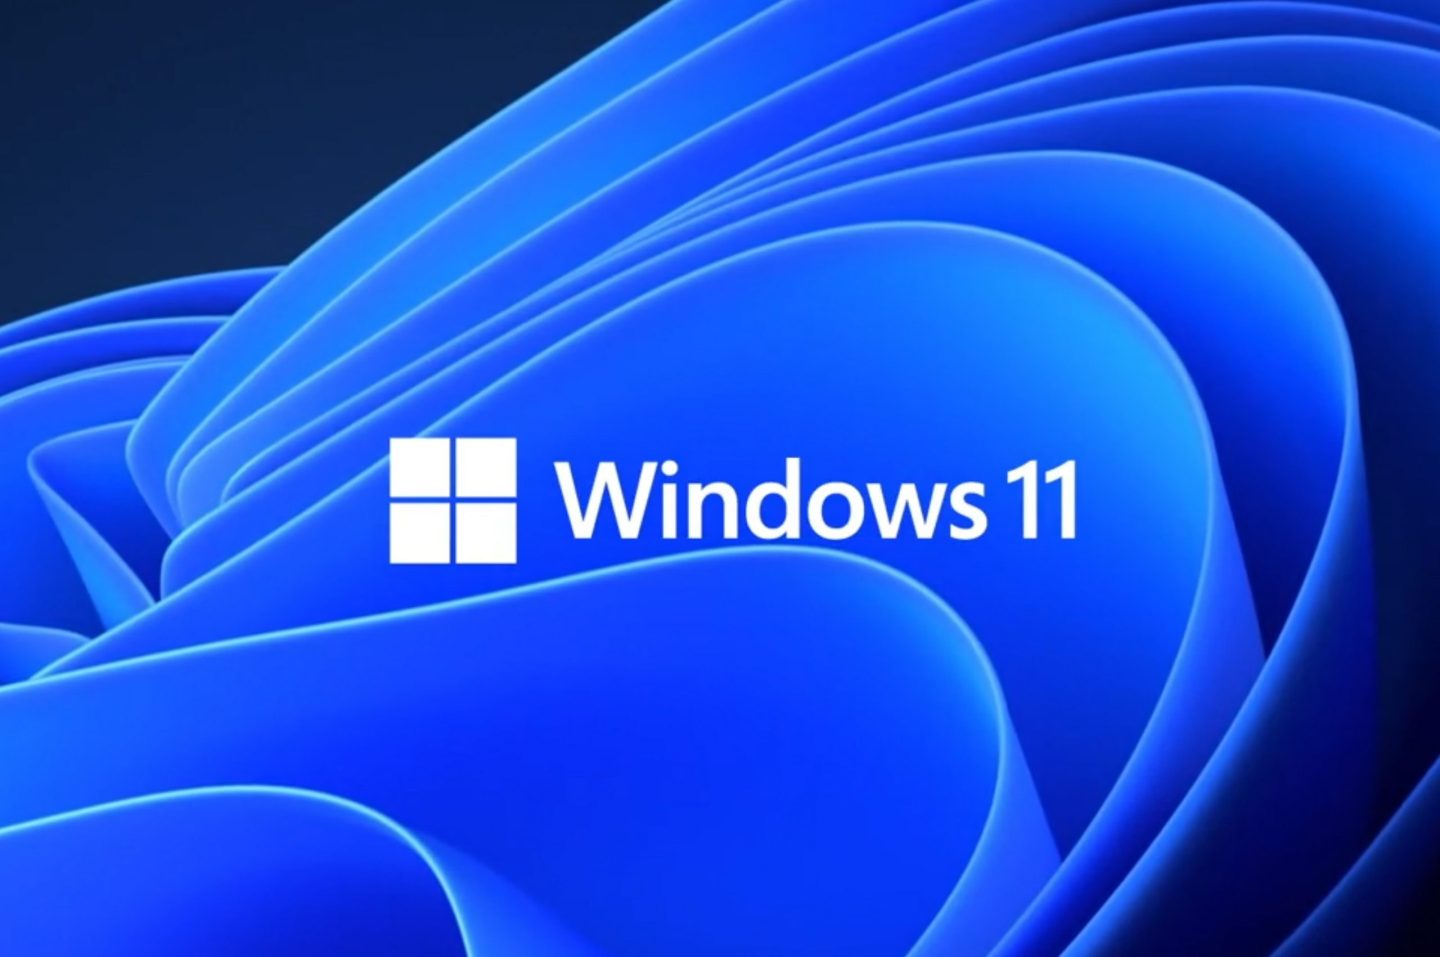 في خطوة طال انتظارها، تحديث ويندوز 11 الجديد سيوفر دعمًا لتطبيقات أندرويد